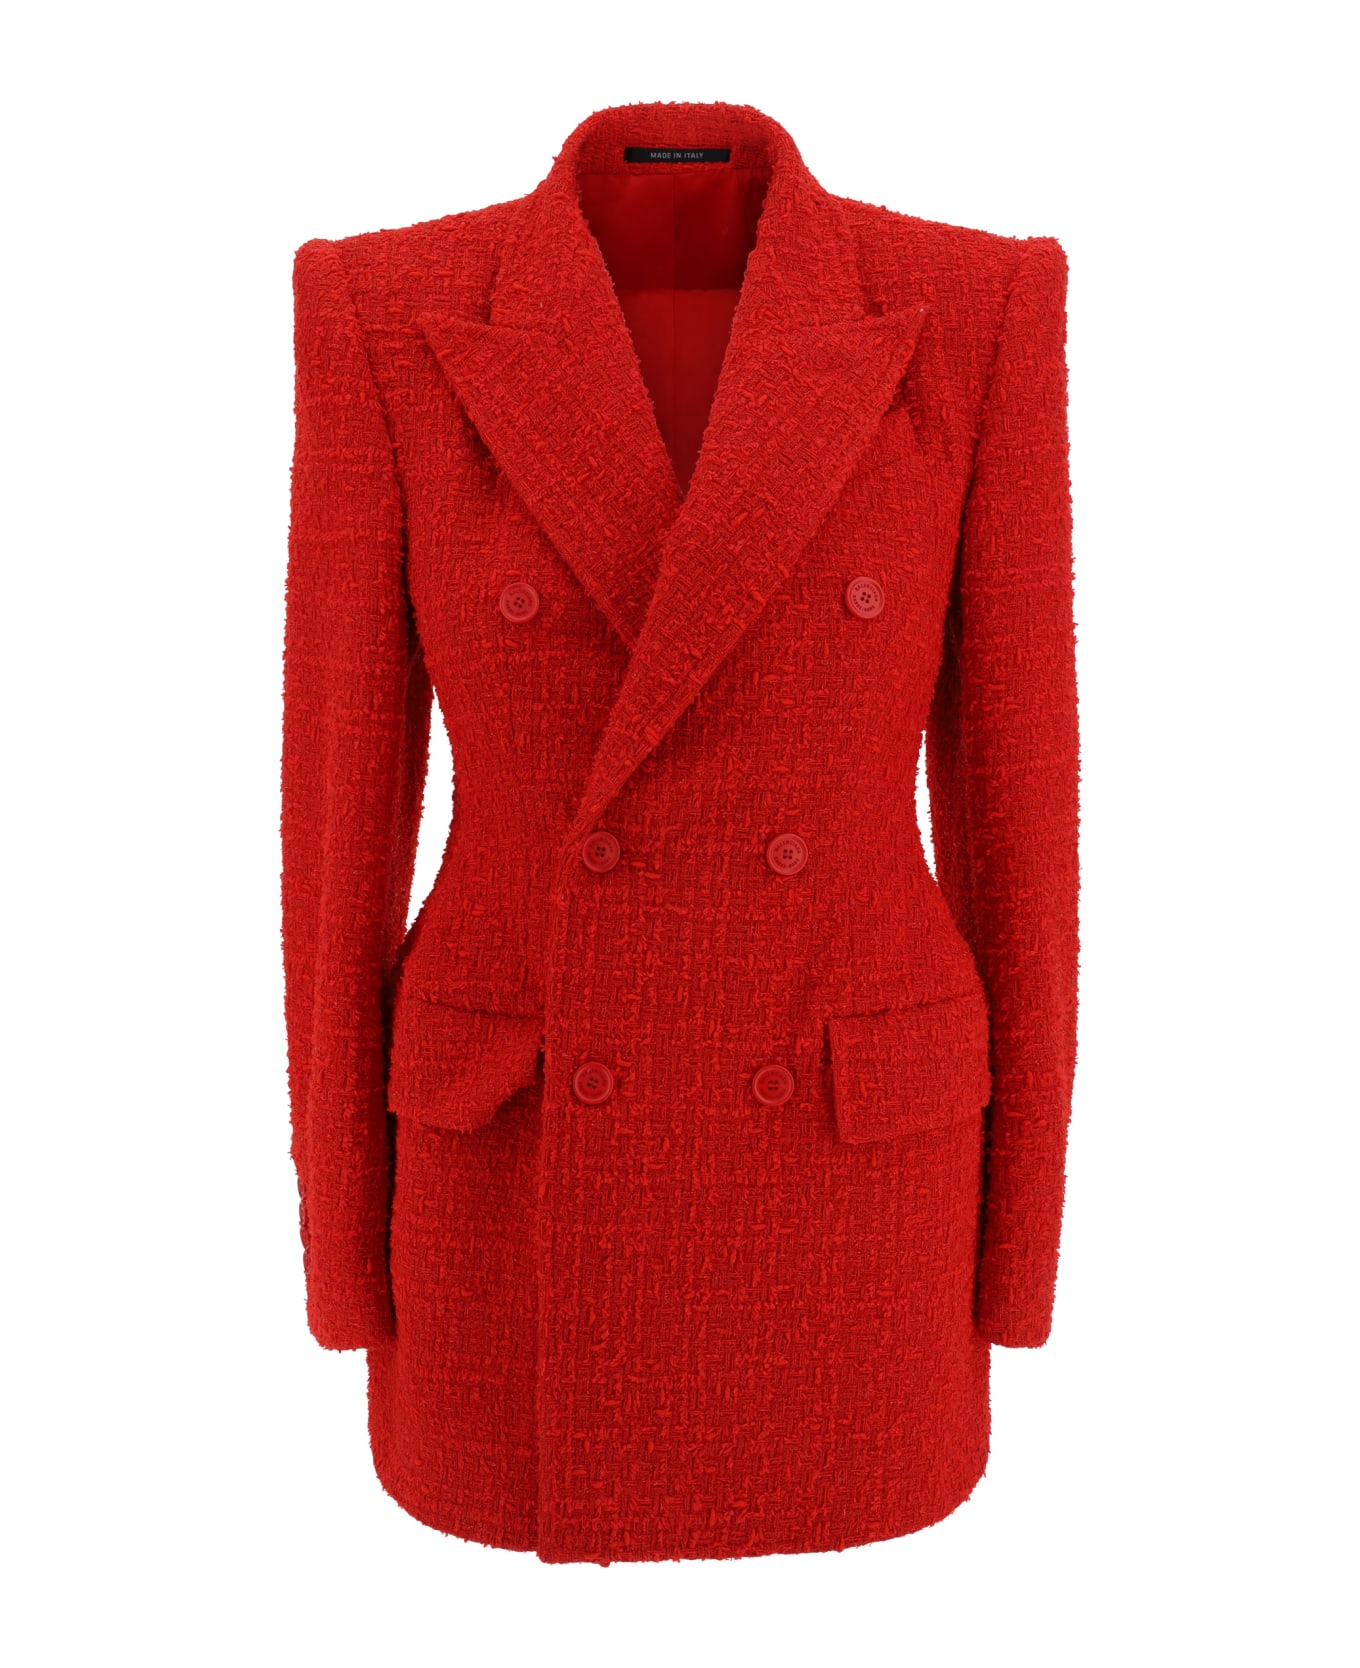 Balenciaga Tweed Blazer Jacket - red